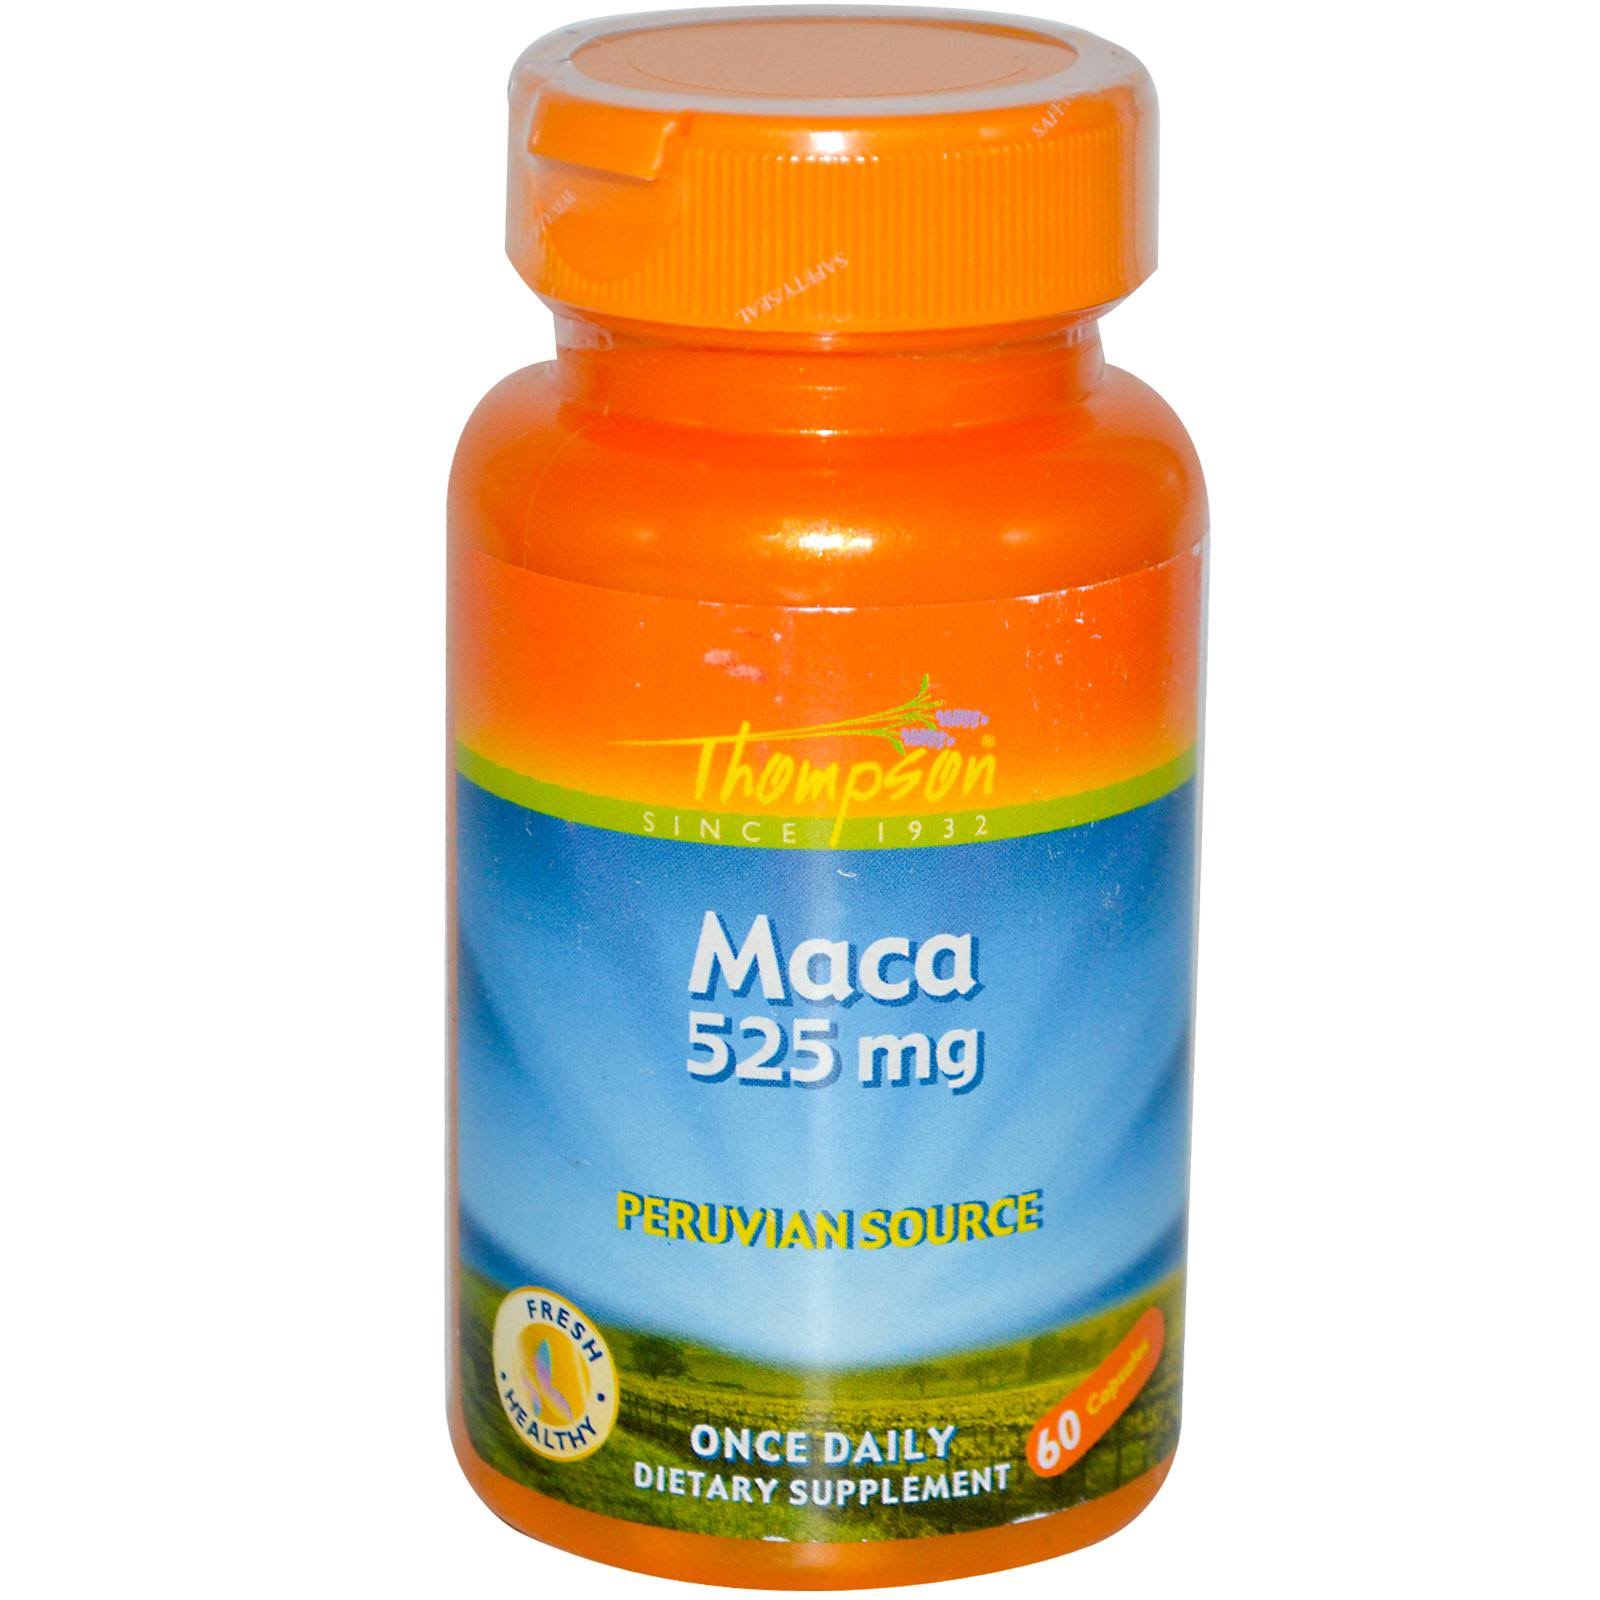 Thompson Maca Dietary Supplement - 525mg, 60ct